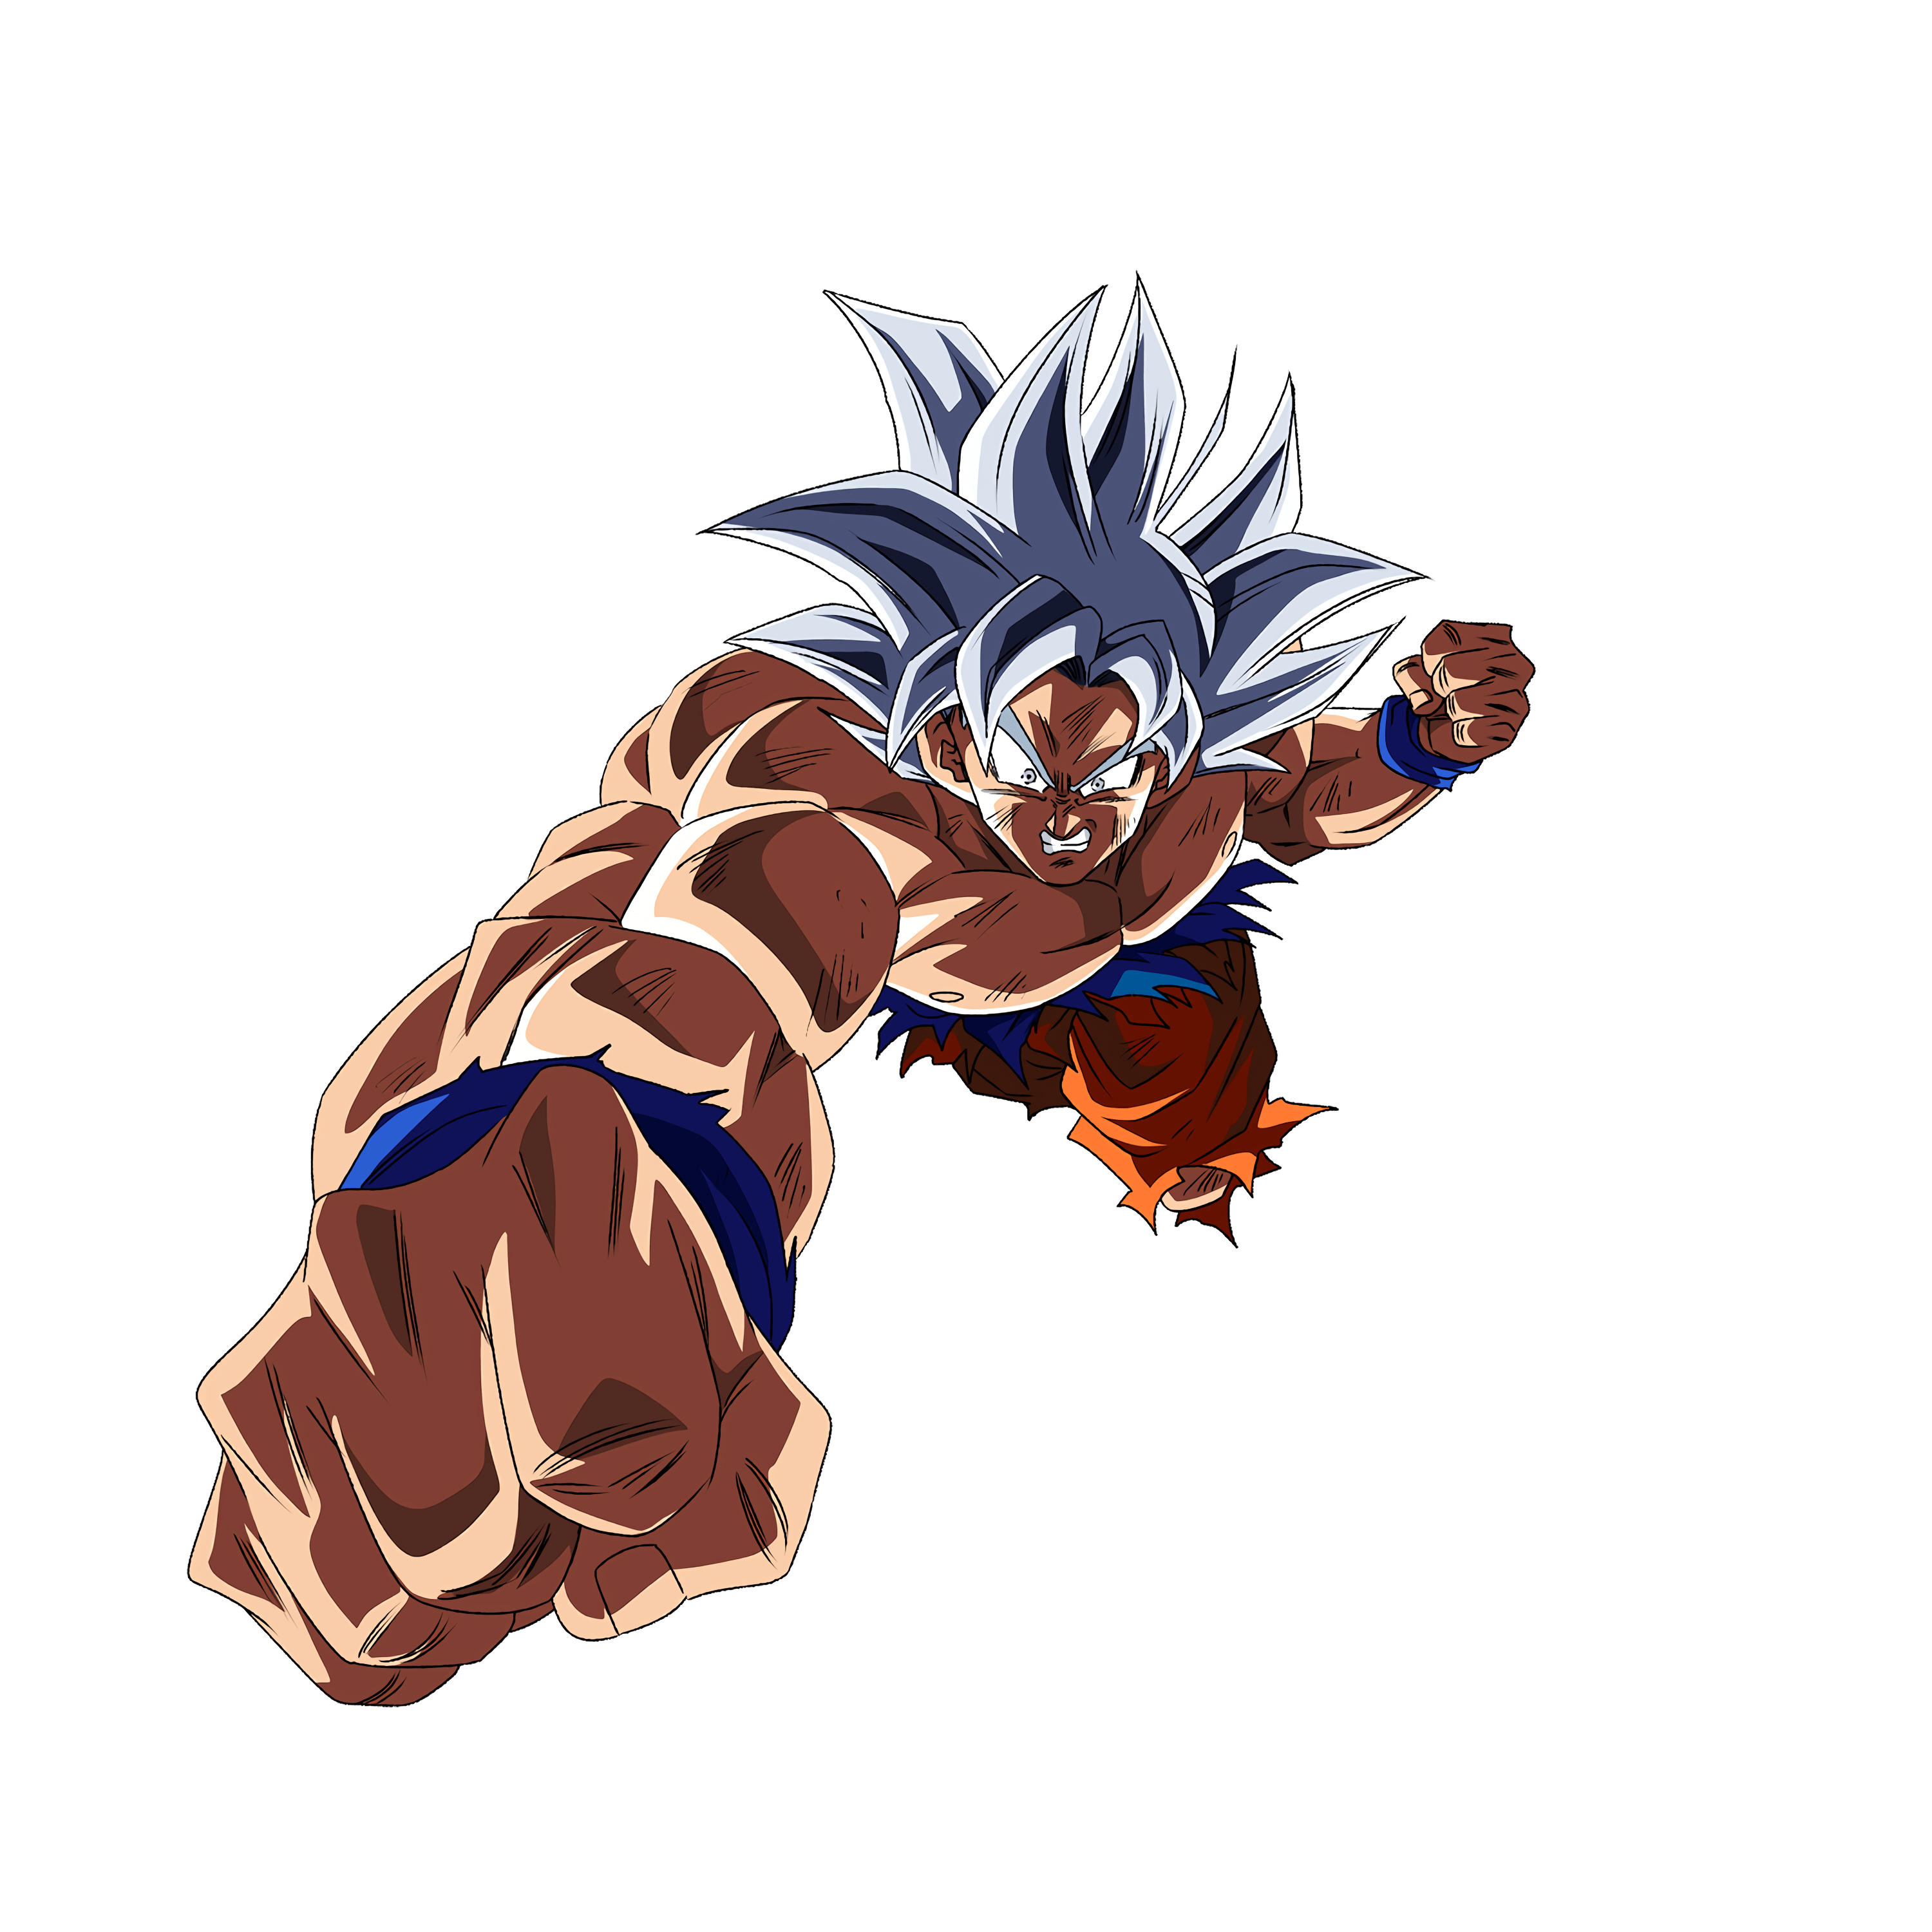 Goku Ultra Instinct png images